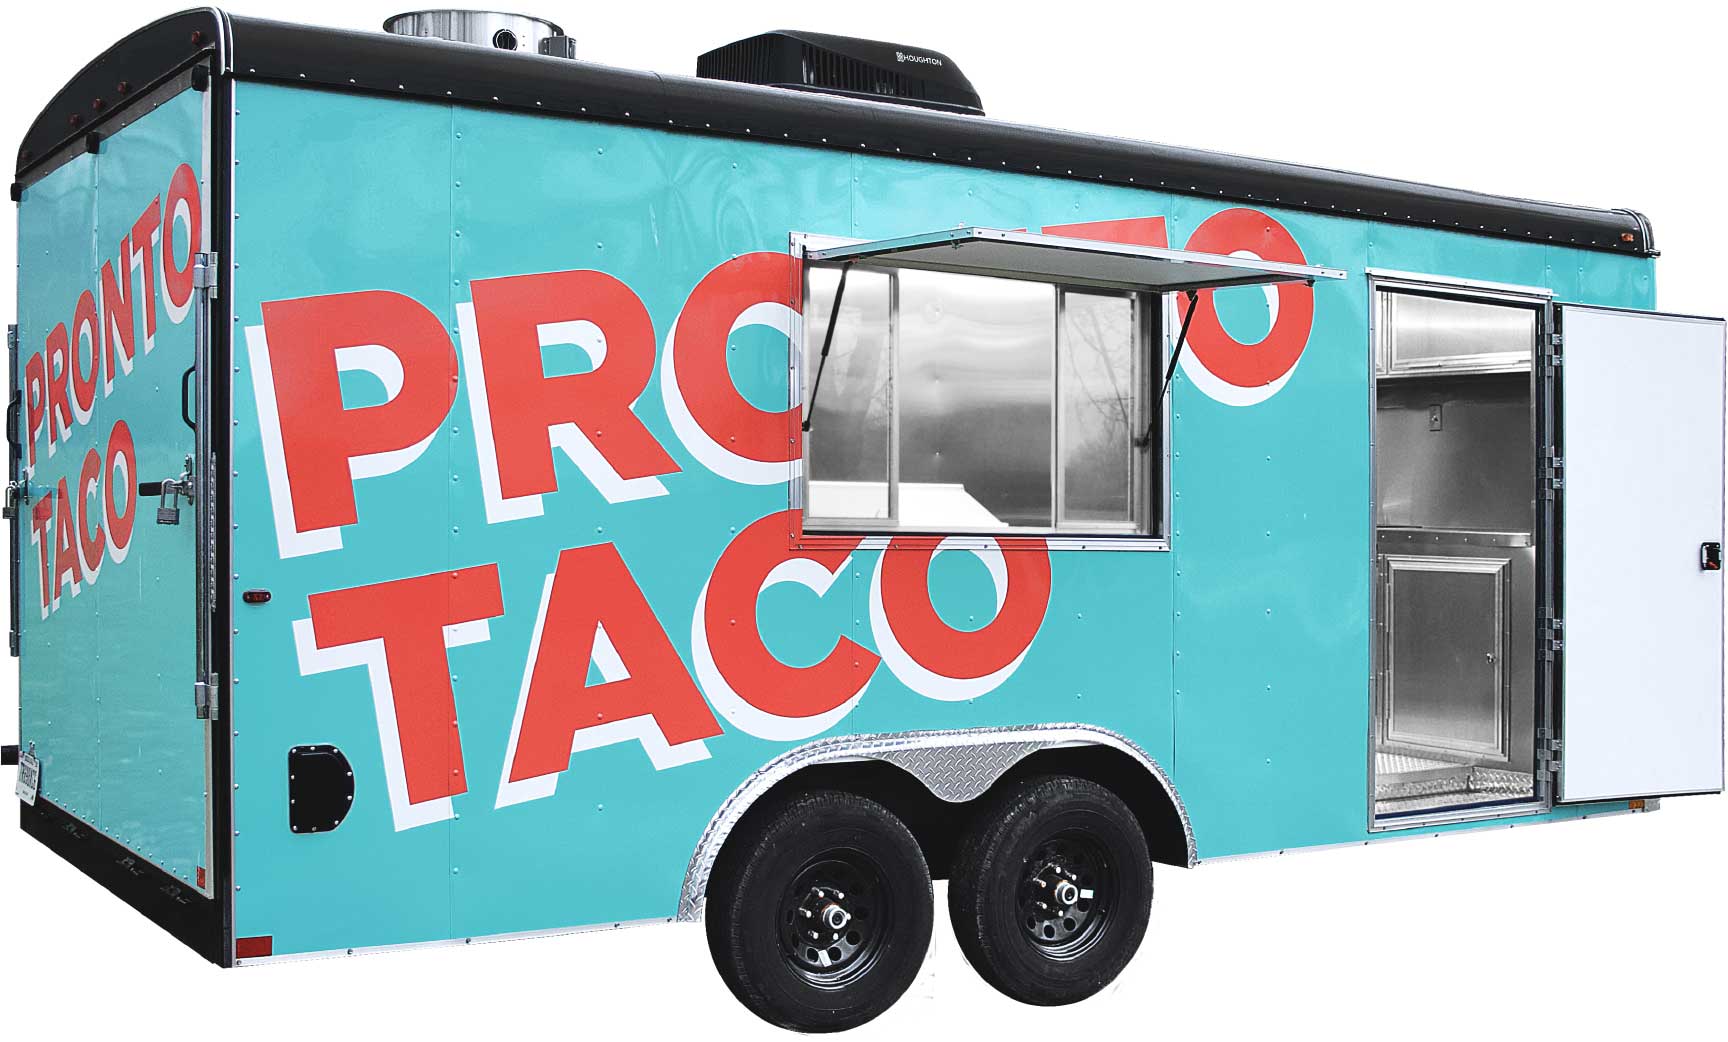 Pronto Taco food truck with open window and door